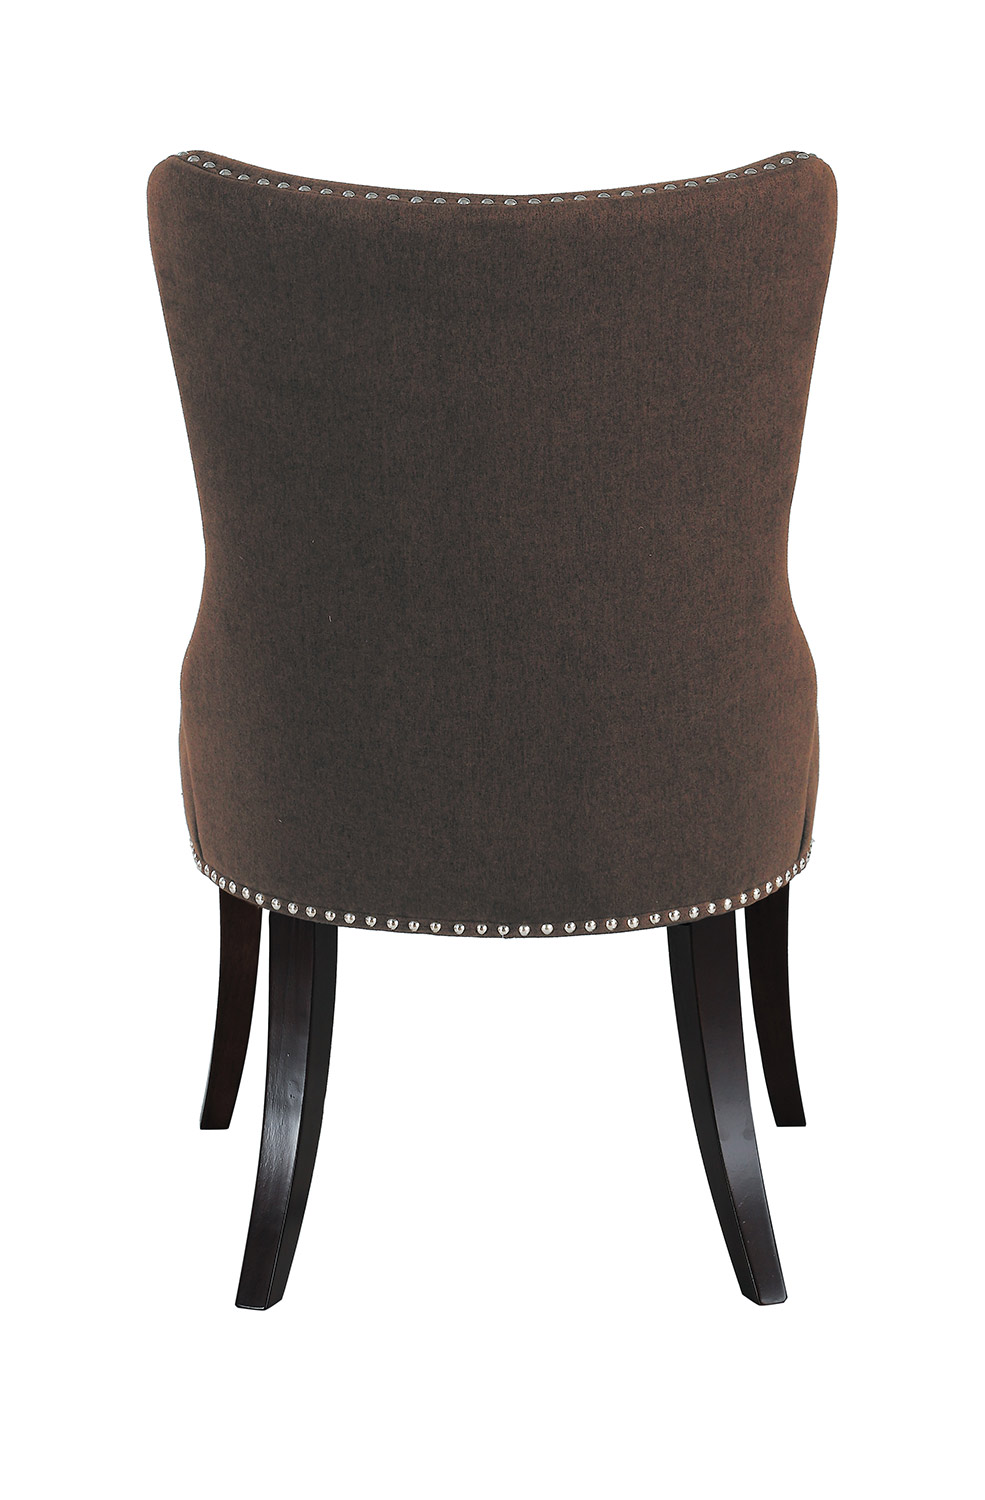 Homelegance Salema Side Chair - Chocolate - Dark Brown